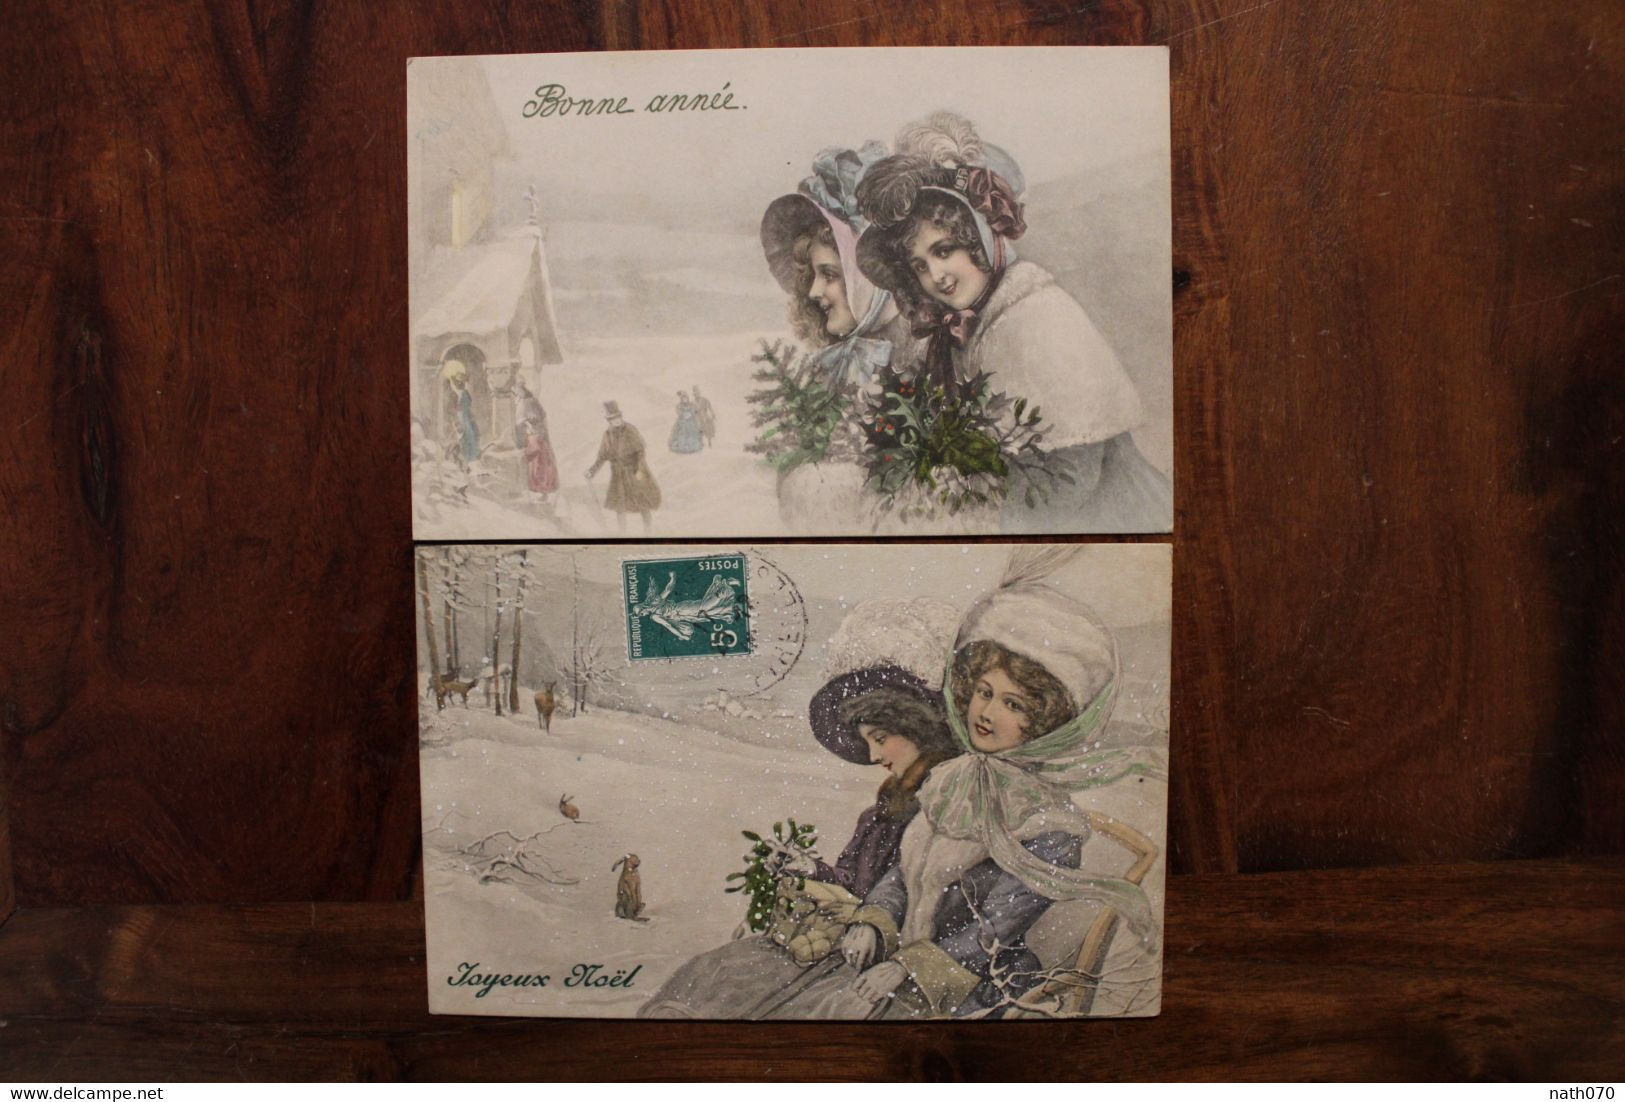 AK 1900's Lot De 2 CPA Femmes élégantes Joyeux Noël Heureuse Année Illustrateur V K VIENNE Litho - Vienne